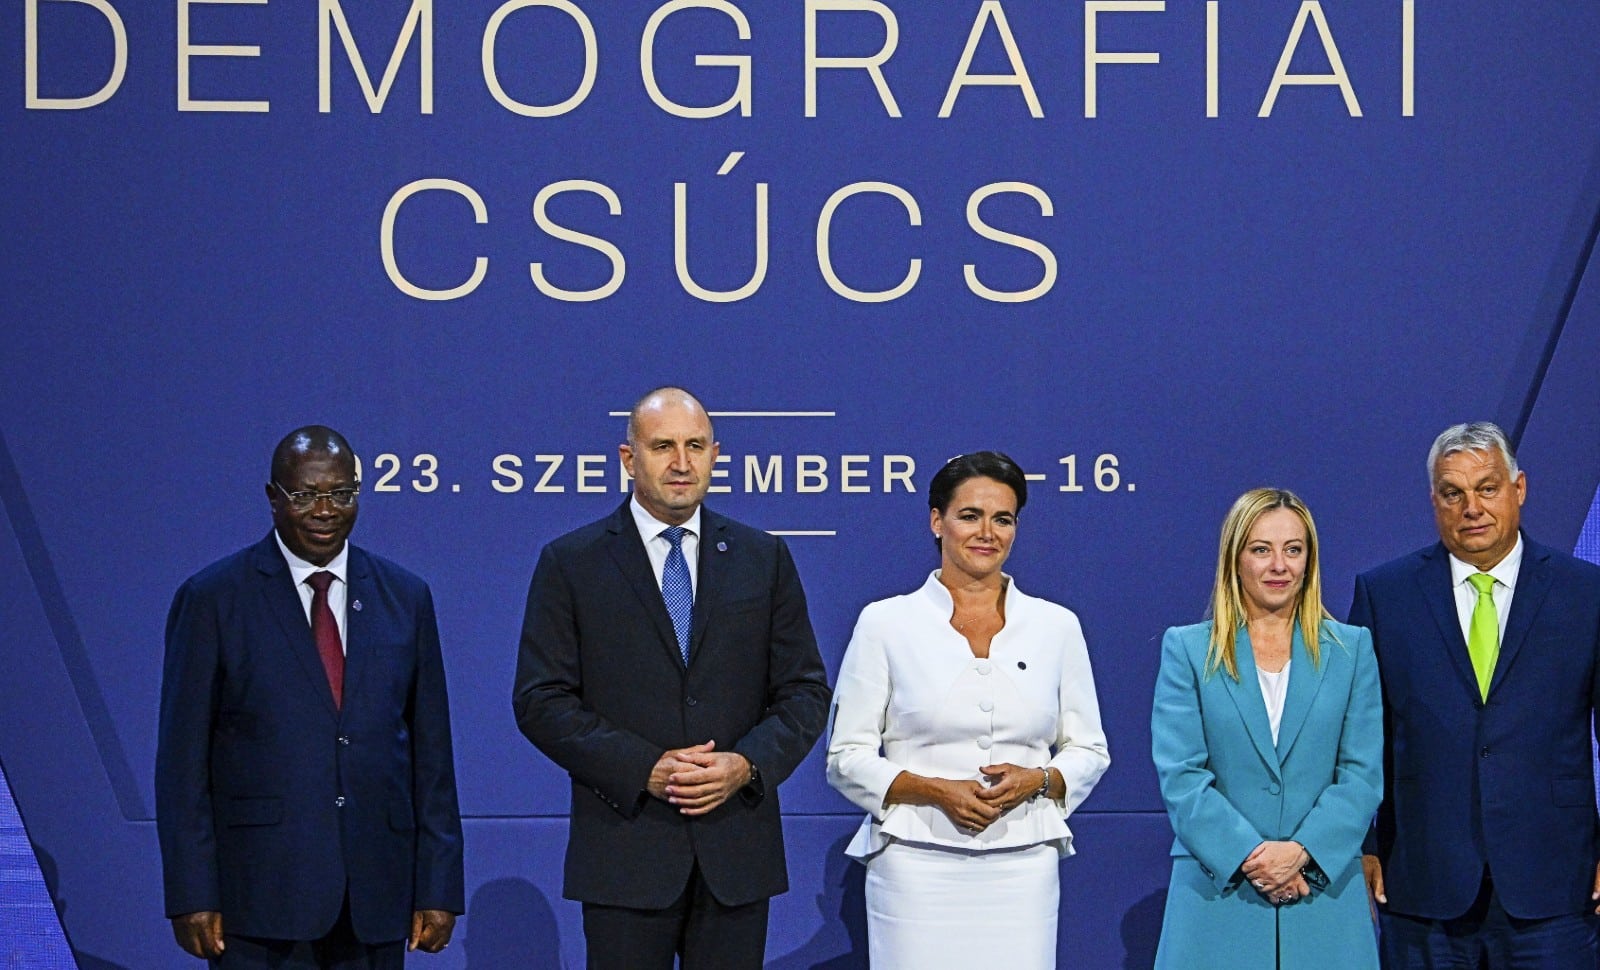 A Budapest, les conservateurs du monde entier s’inquiètent de la dénatalité européenne